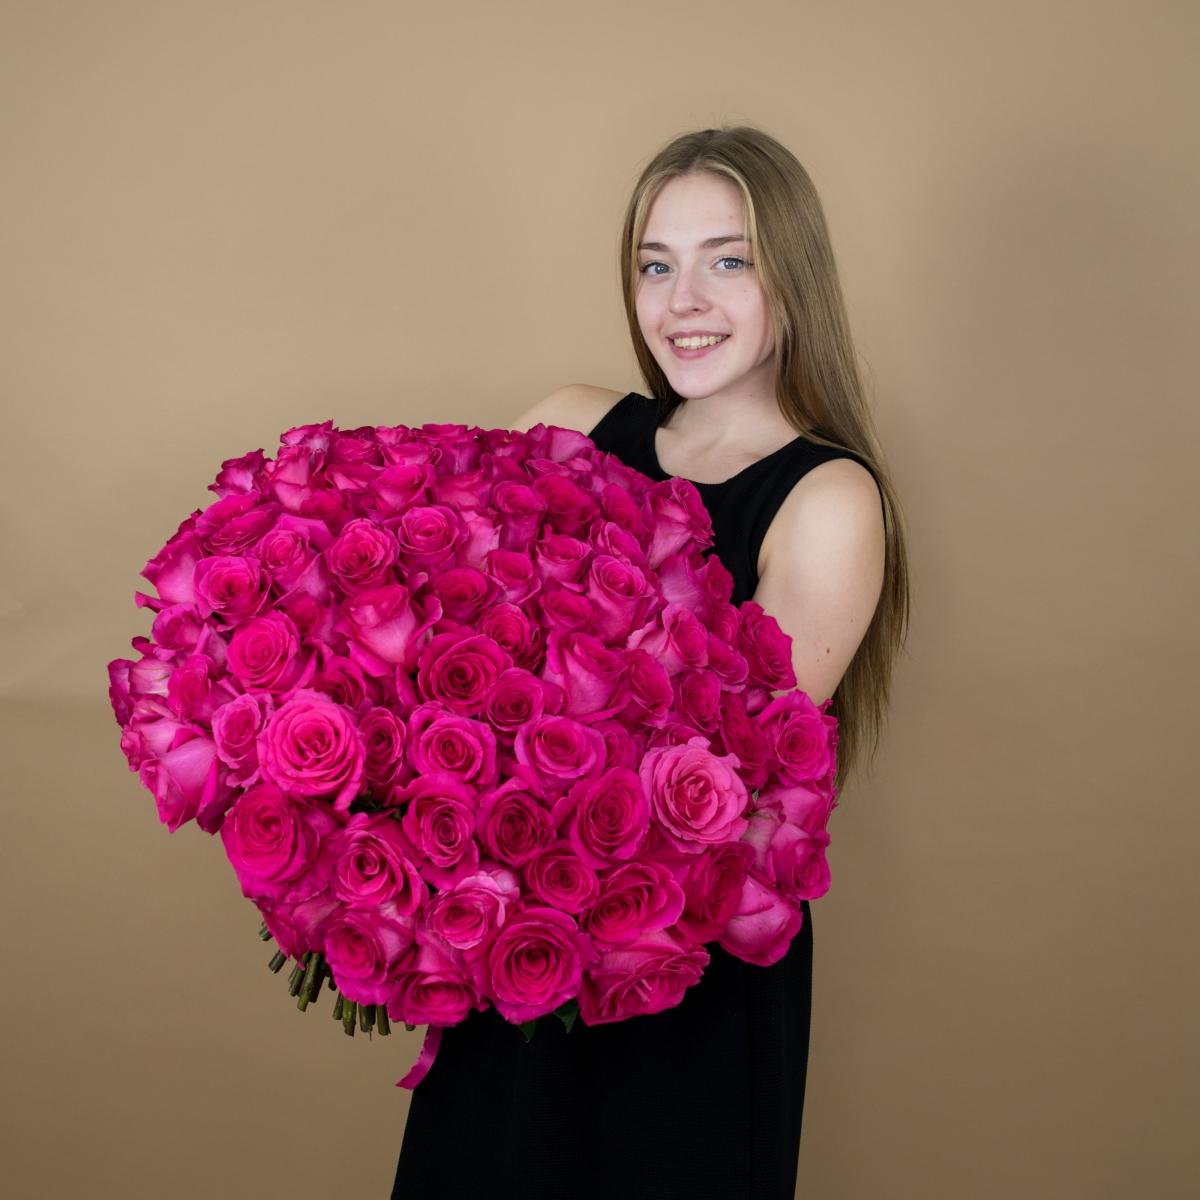 40 см Розовые розы (Эквадор)